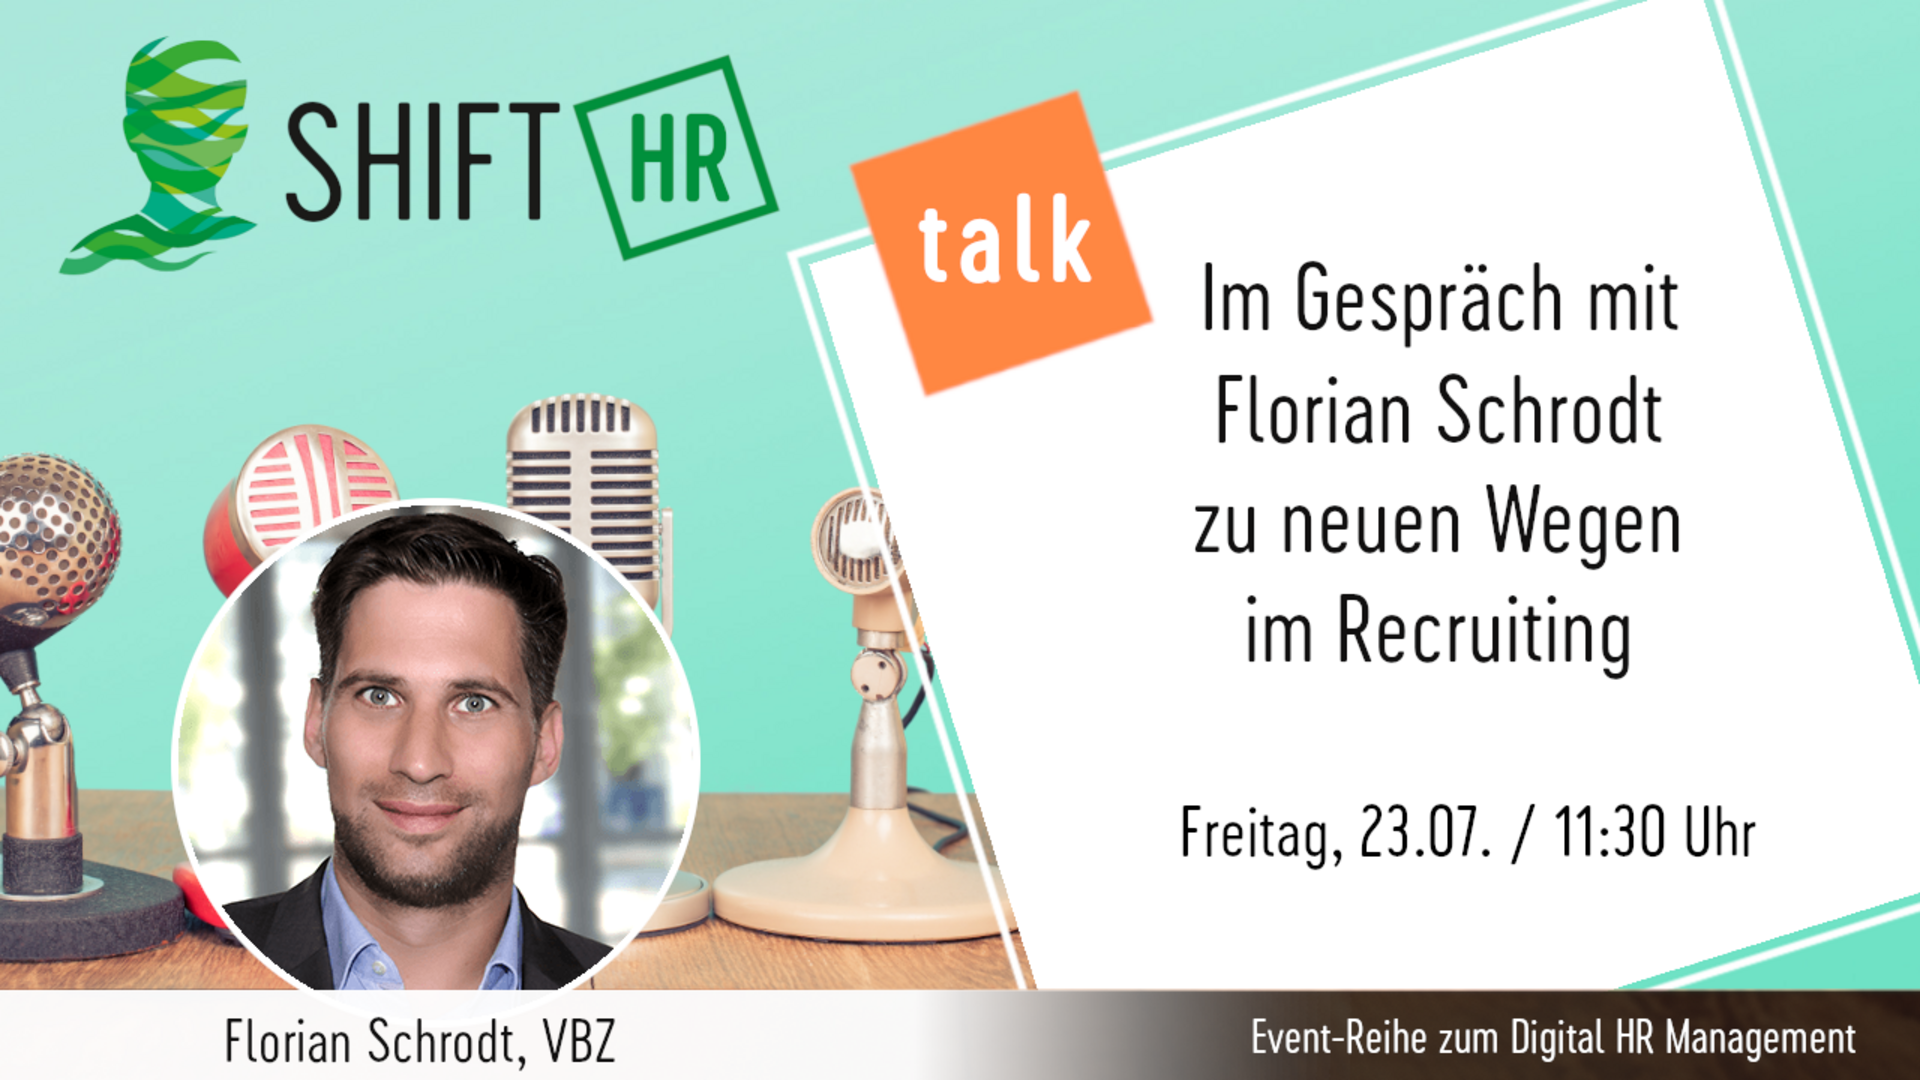 Im Gespräch mit Florian Schrodt zu neuen Wegen im Recruiting bei Verkehrsbetriebe Zürich